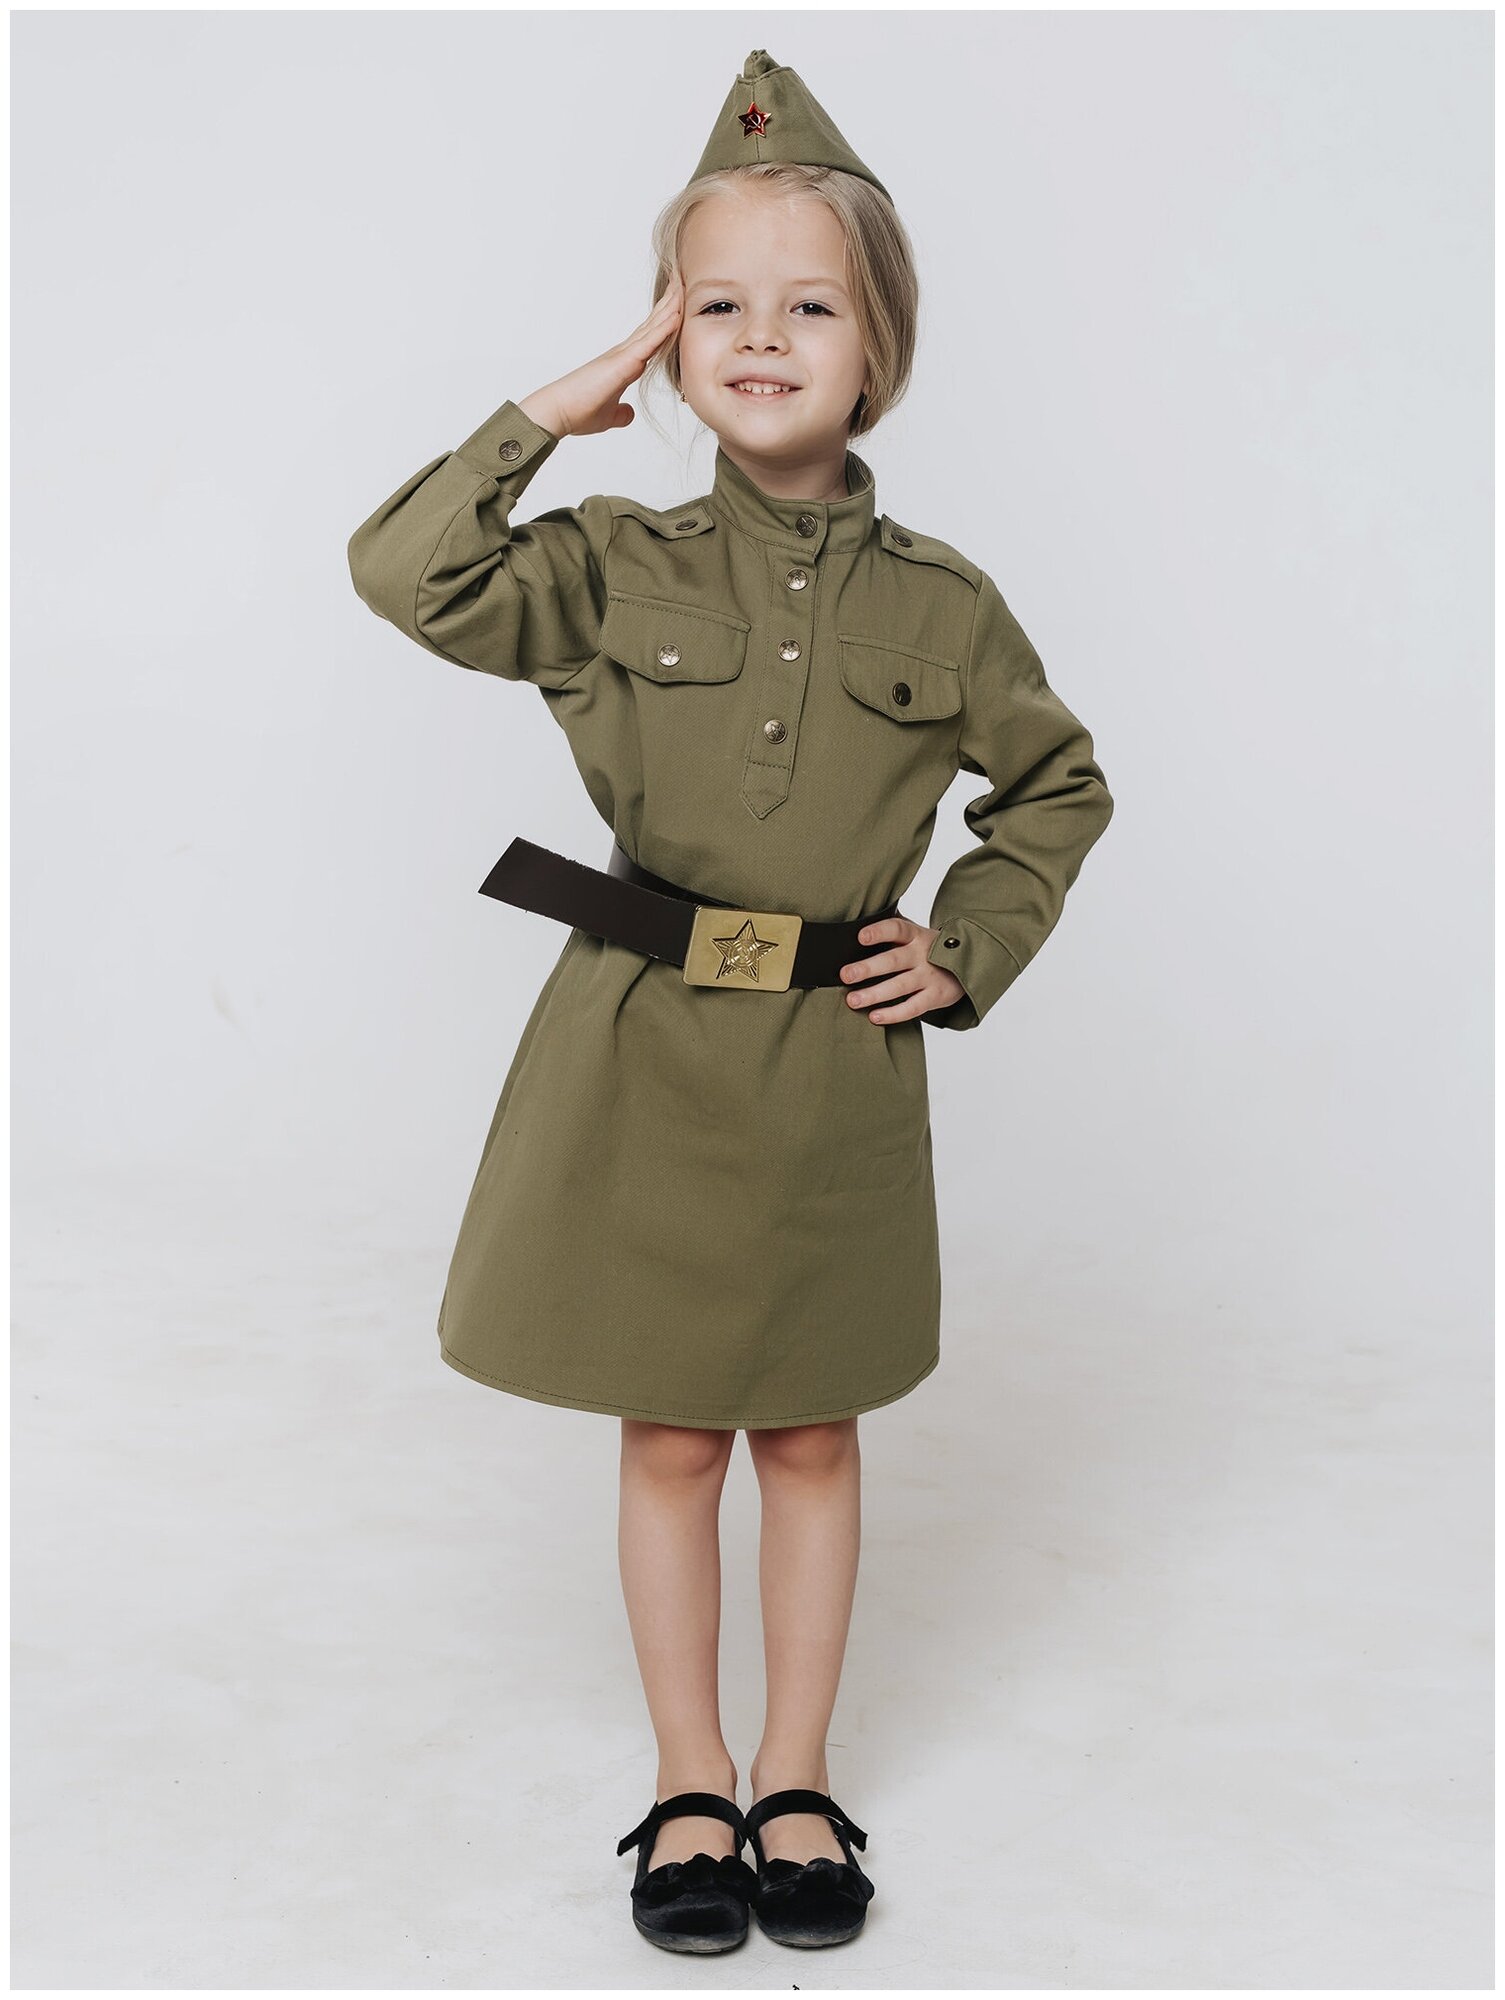 Костюм Солдатка хлопок (2131 к-21), размер 116, цвет мультиколор, бренд Пуговка